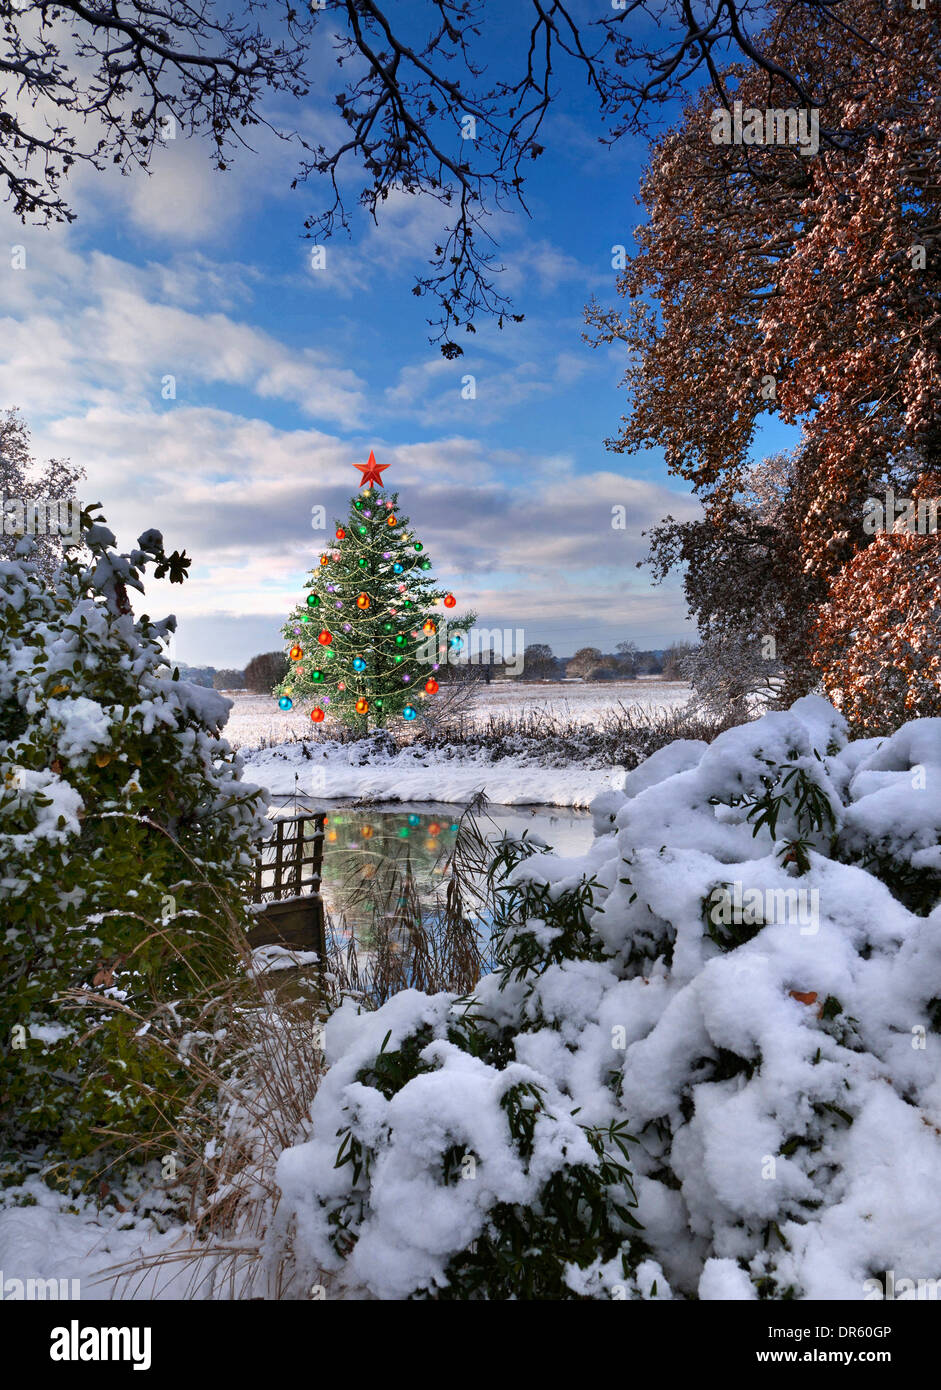 WEIHNACHTSBAUM FLUSSGARTEN SURREALES KONZEPT Winteransicht schneebedeckter Garten über den Fluss zu virtuell dekorierten Weihnachtsbaum und frostiger Landschaft Stockfoto